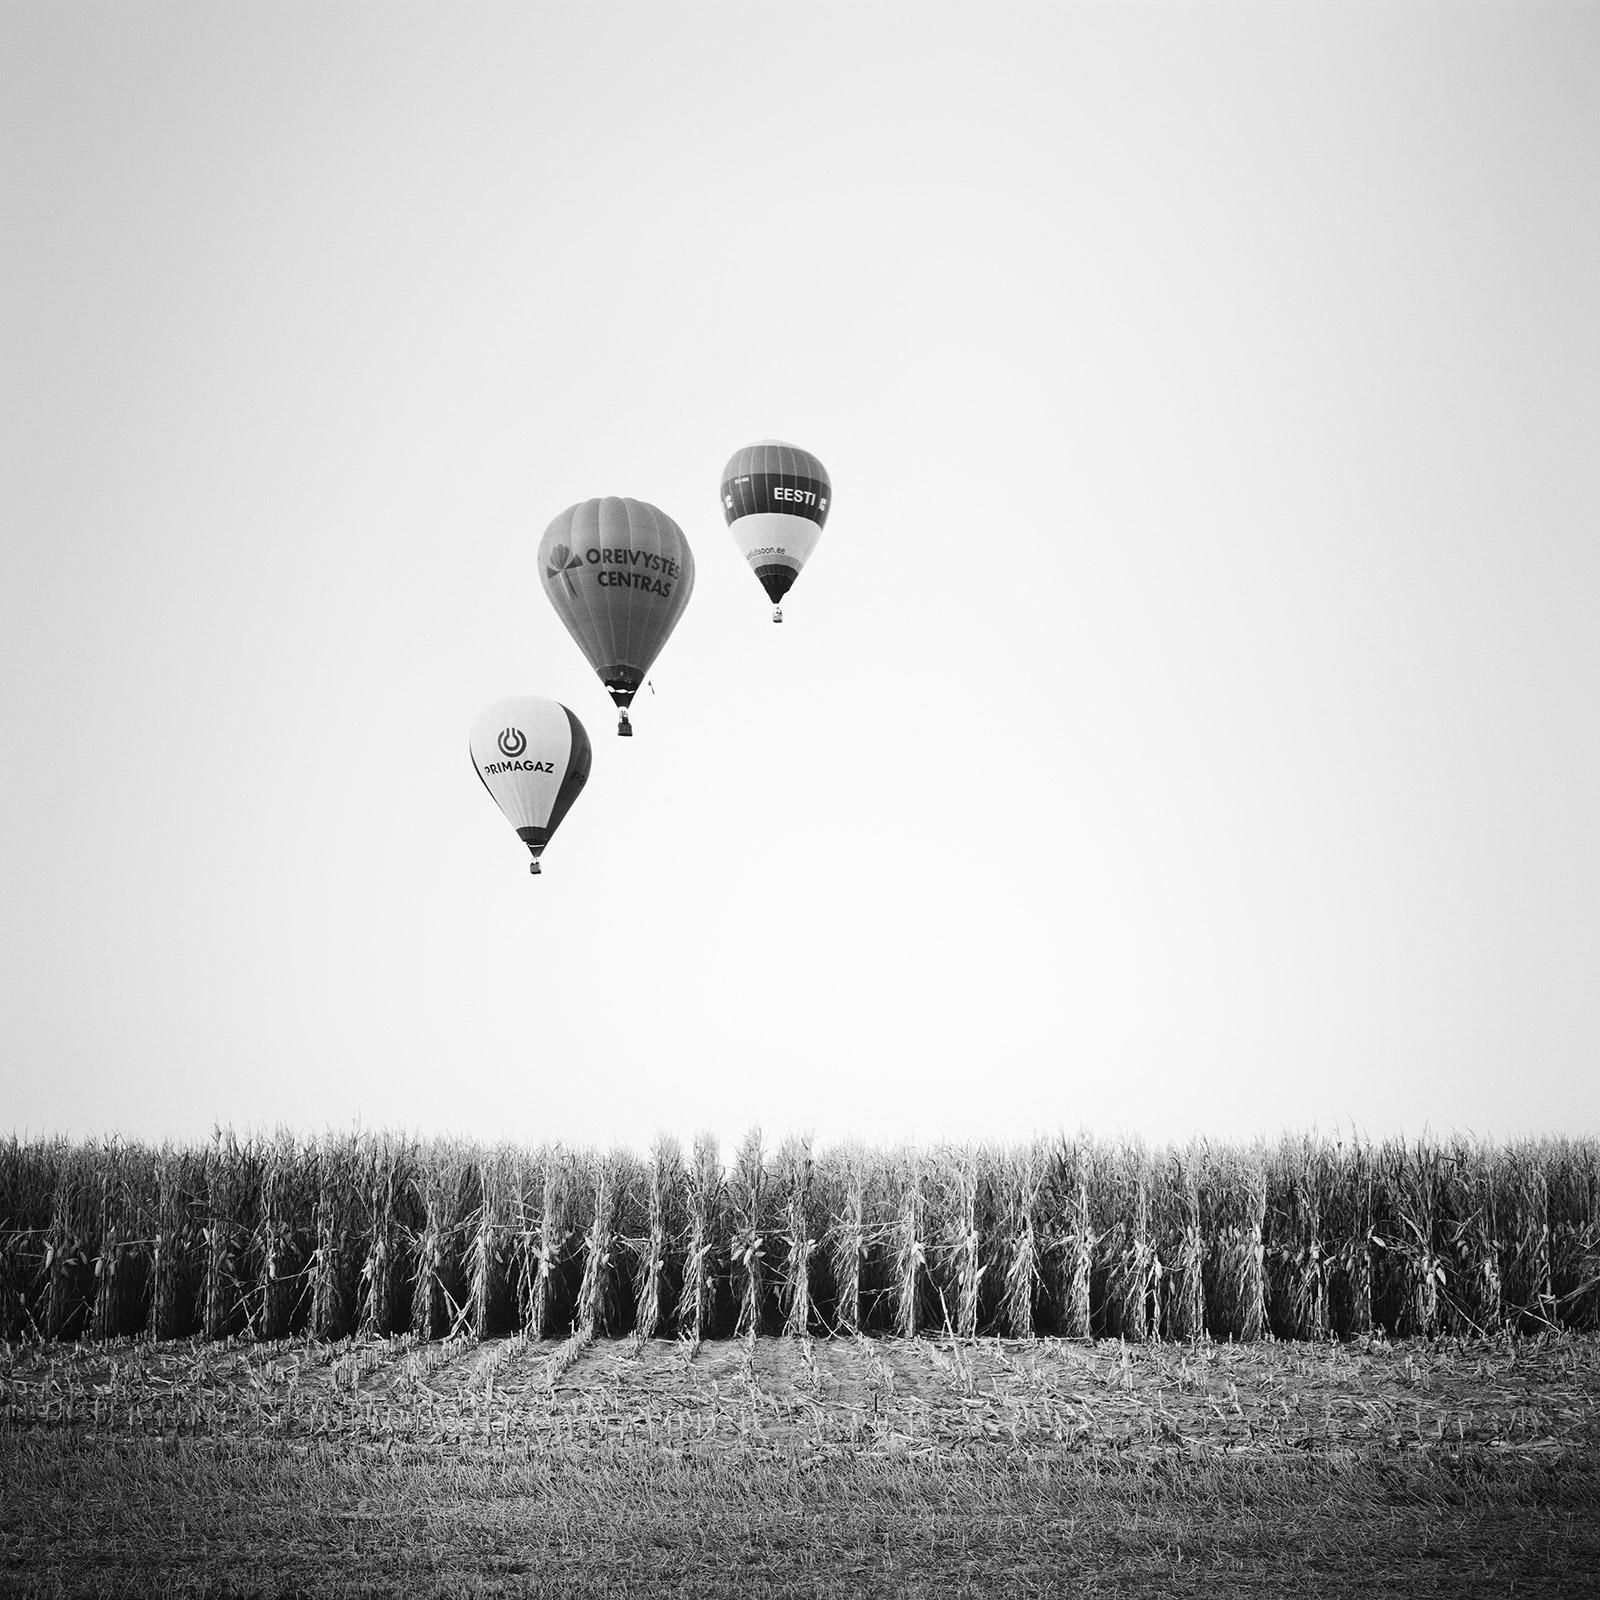 Black and White Photograph Gerald Berghammer - Photo du ballon d'aviation, Cornfield, championnat, Autriche, paysage noir et blanc